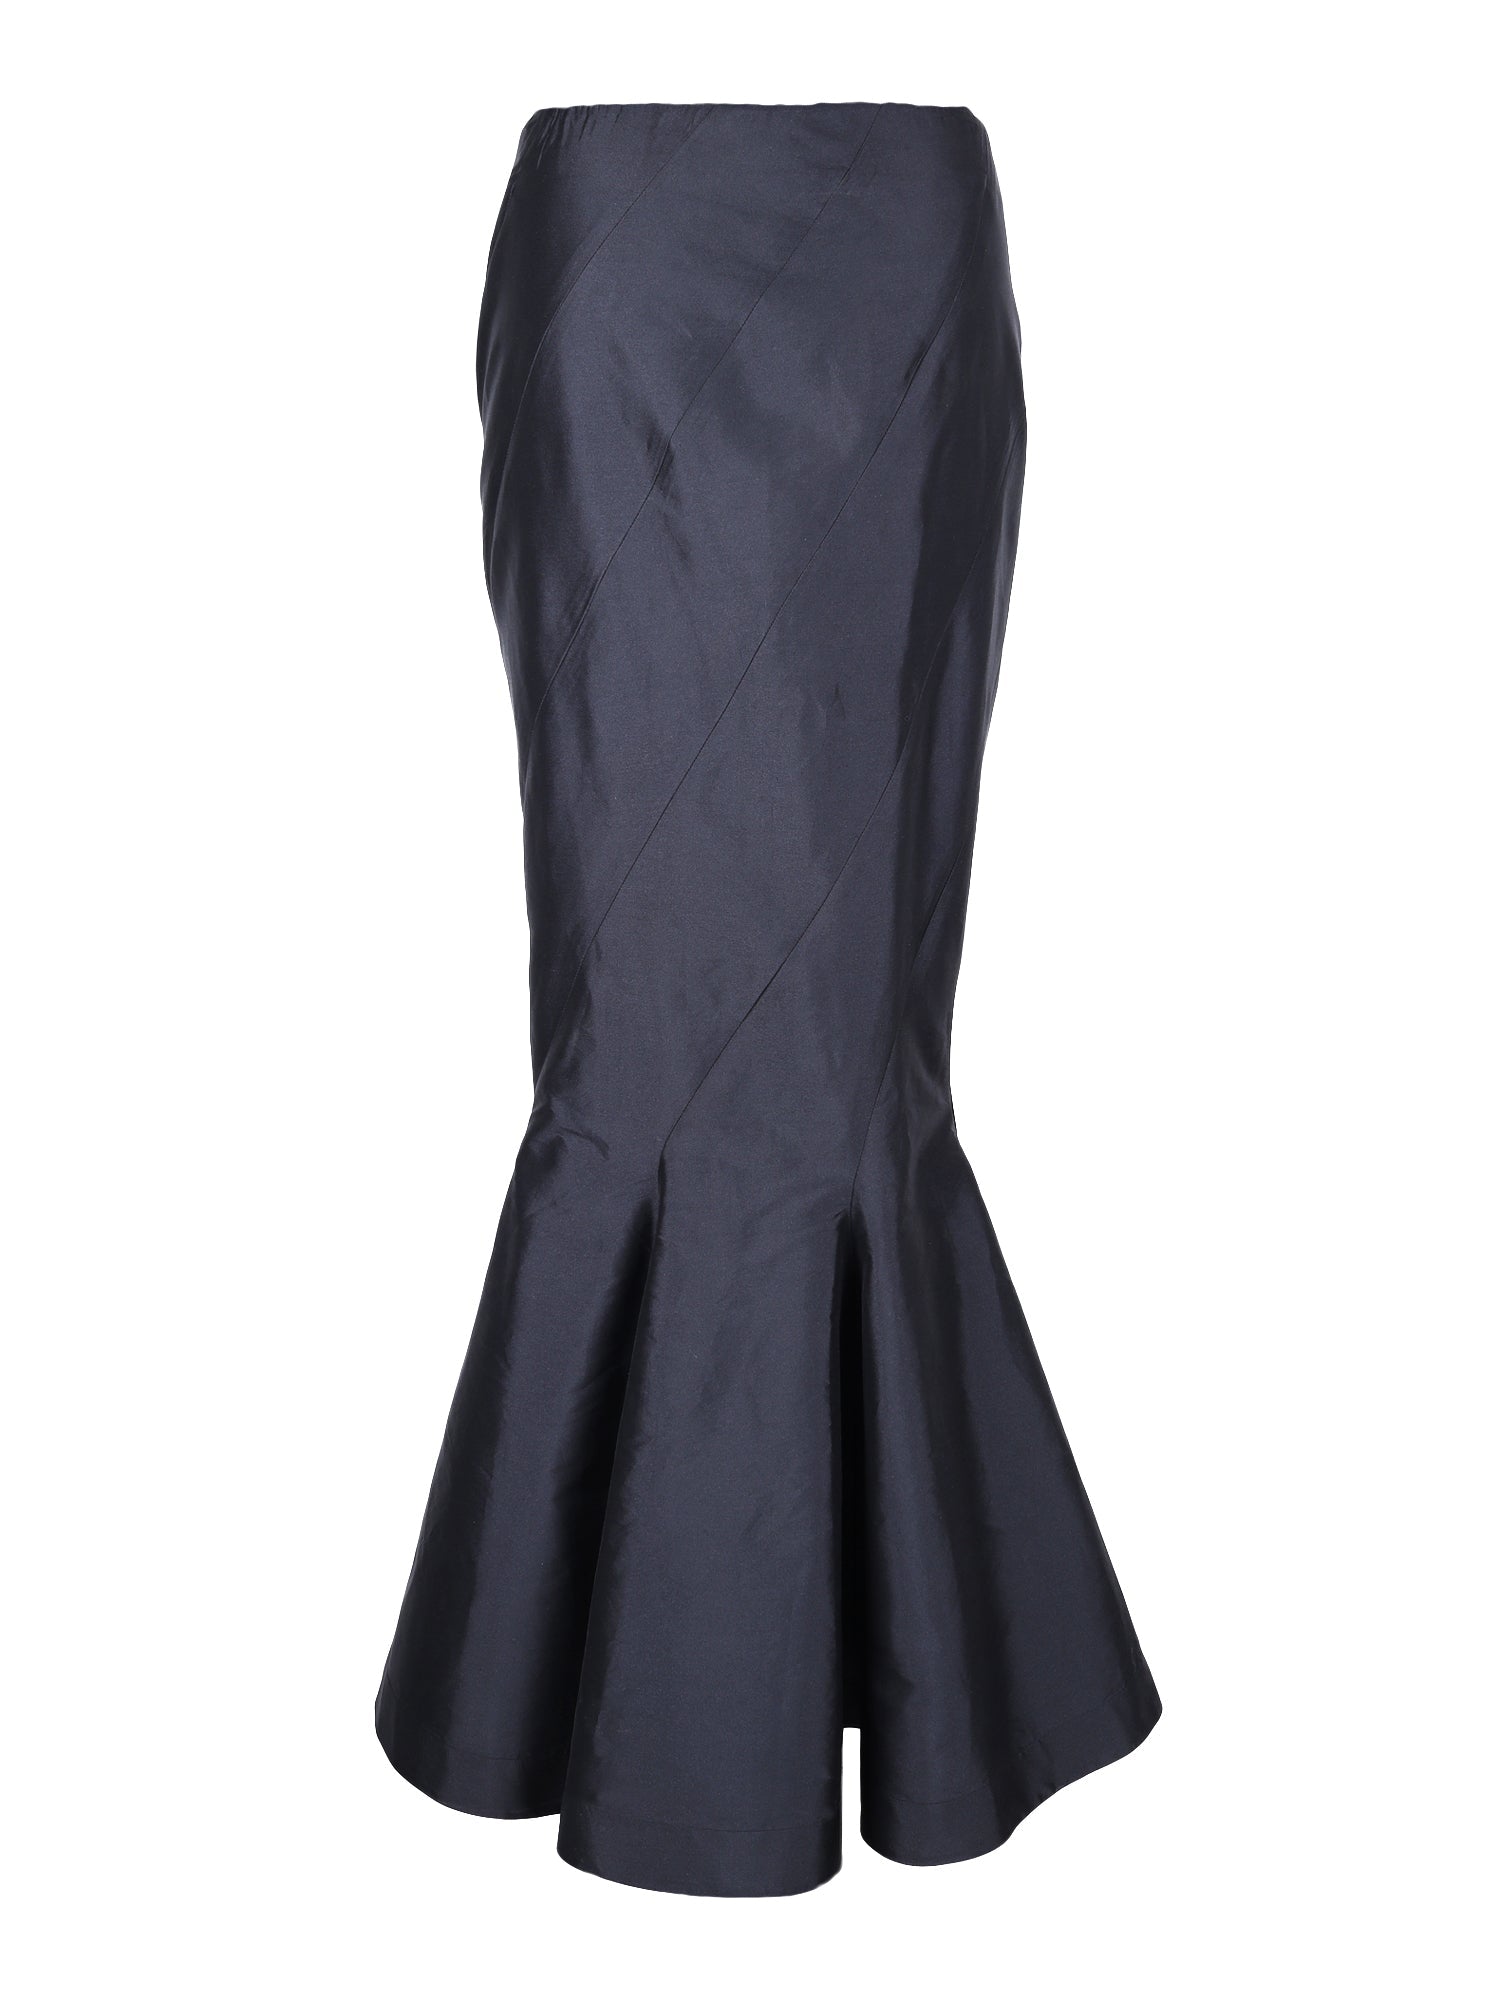 Black taffeta mermaid skirt